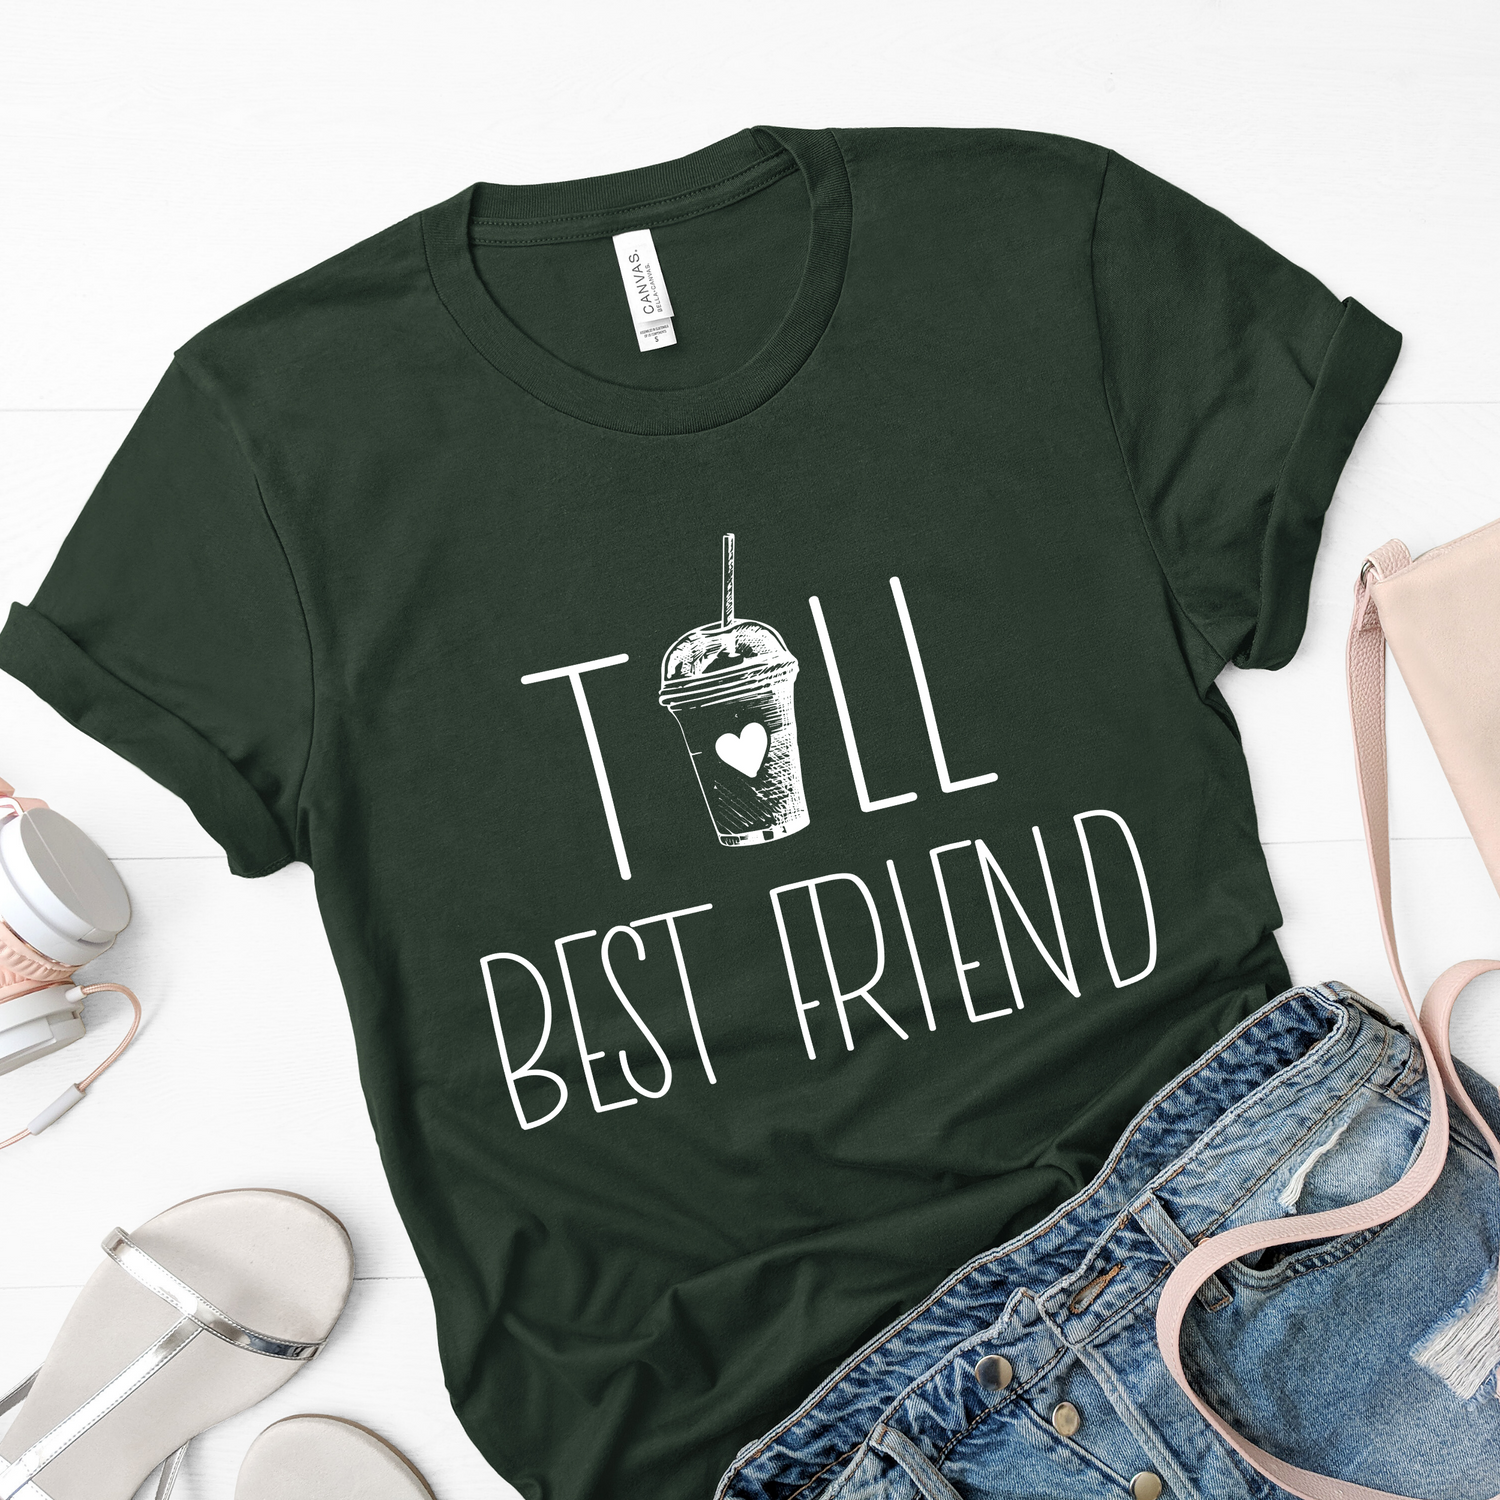 Tall Bestfriend Matching Best Friend Shirt - Teegarb